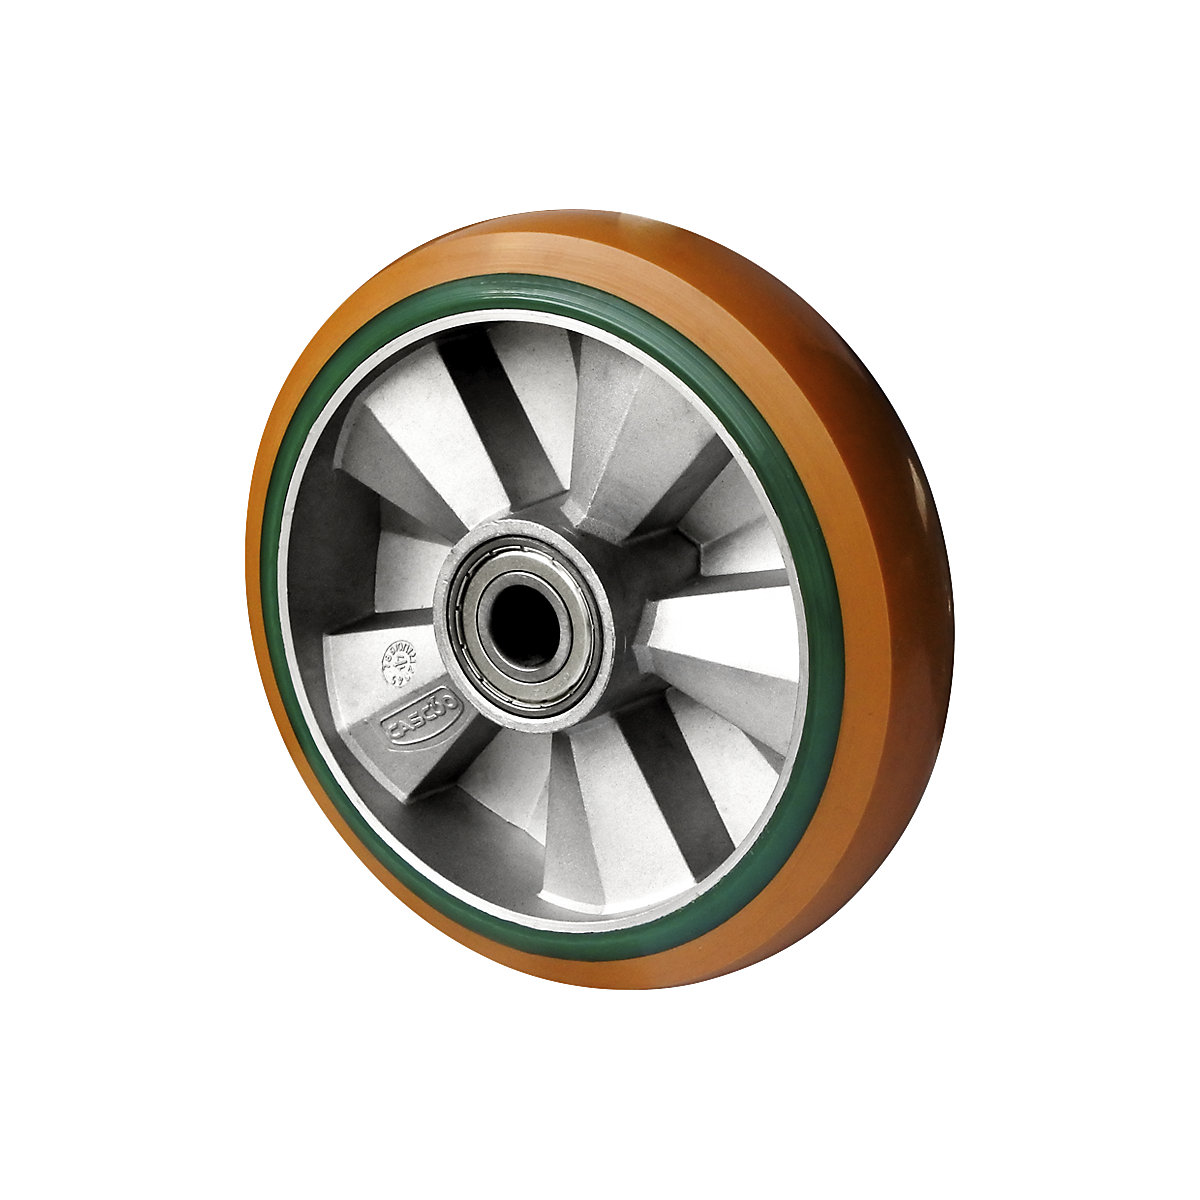 PU/PU elastični kotač, u smeđoj / zelenoj boji